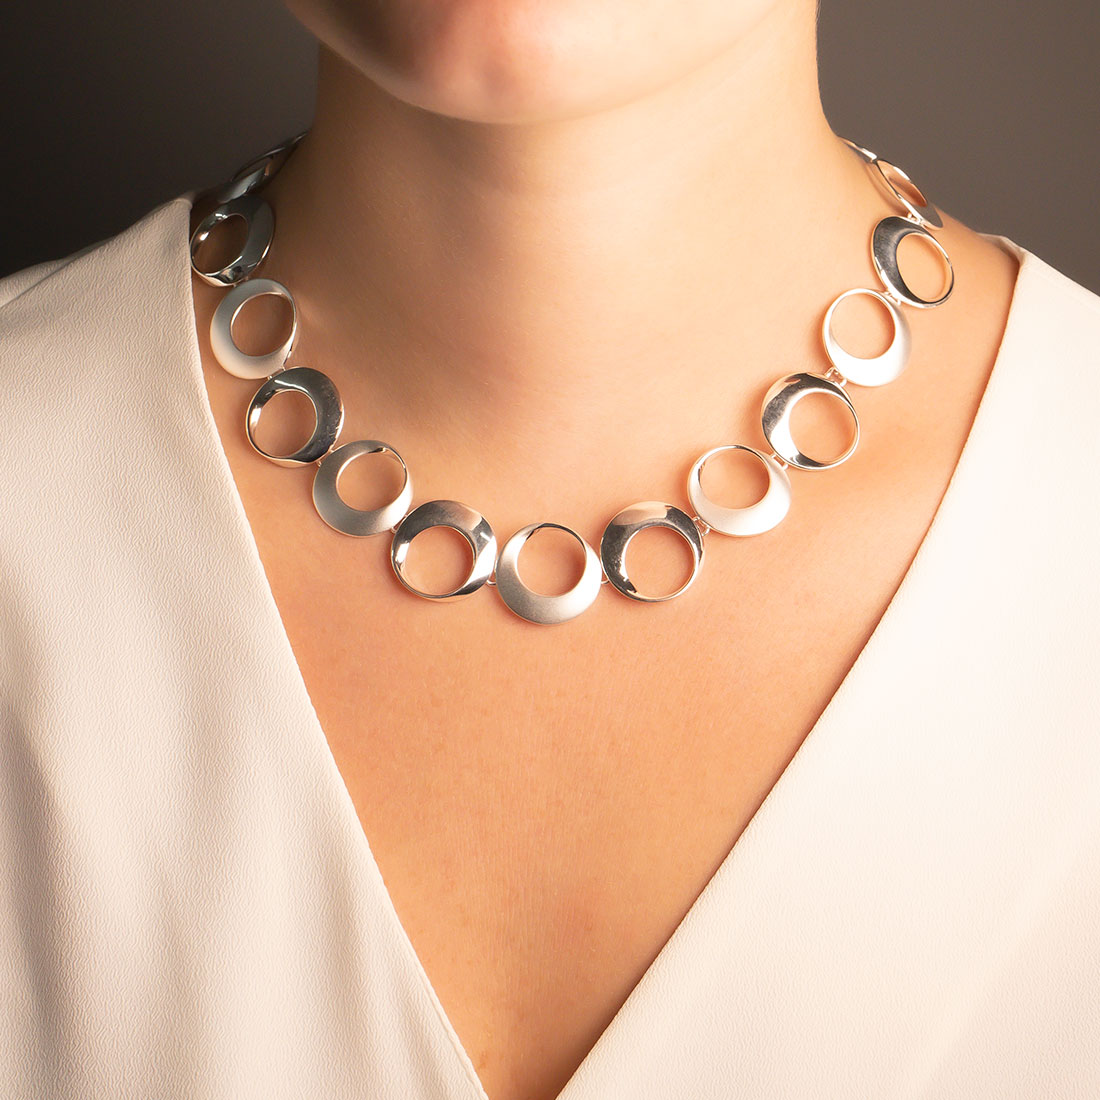 Diamond Interlocking Circle Necklace - Nuha Jewelers